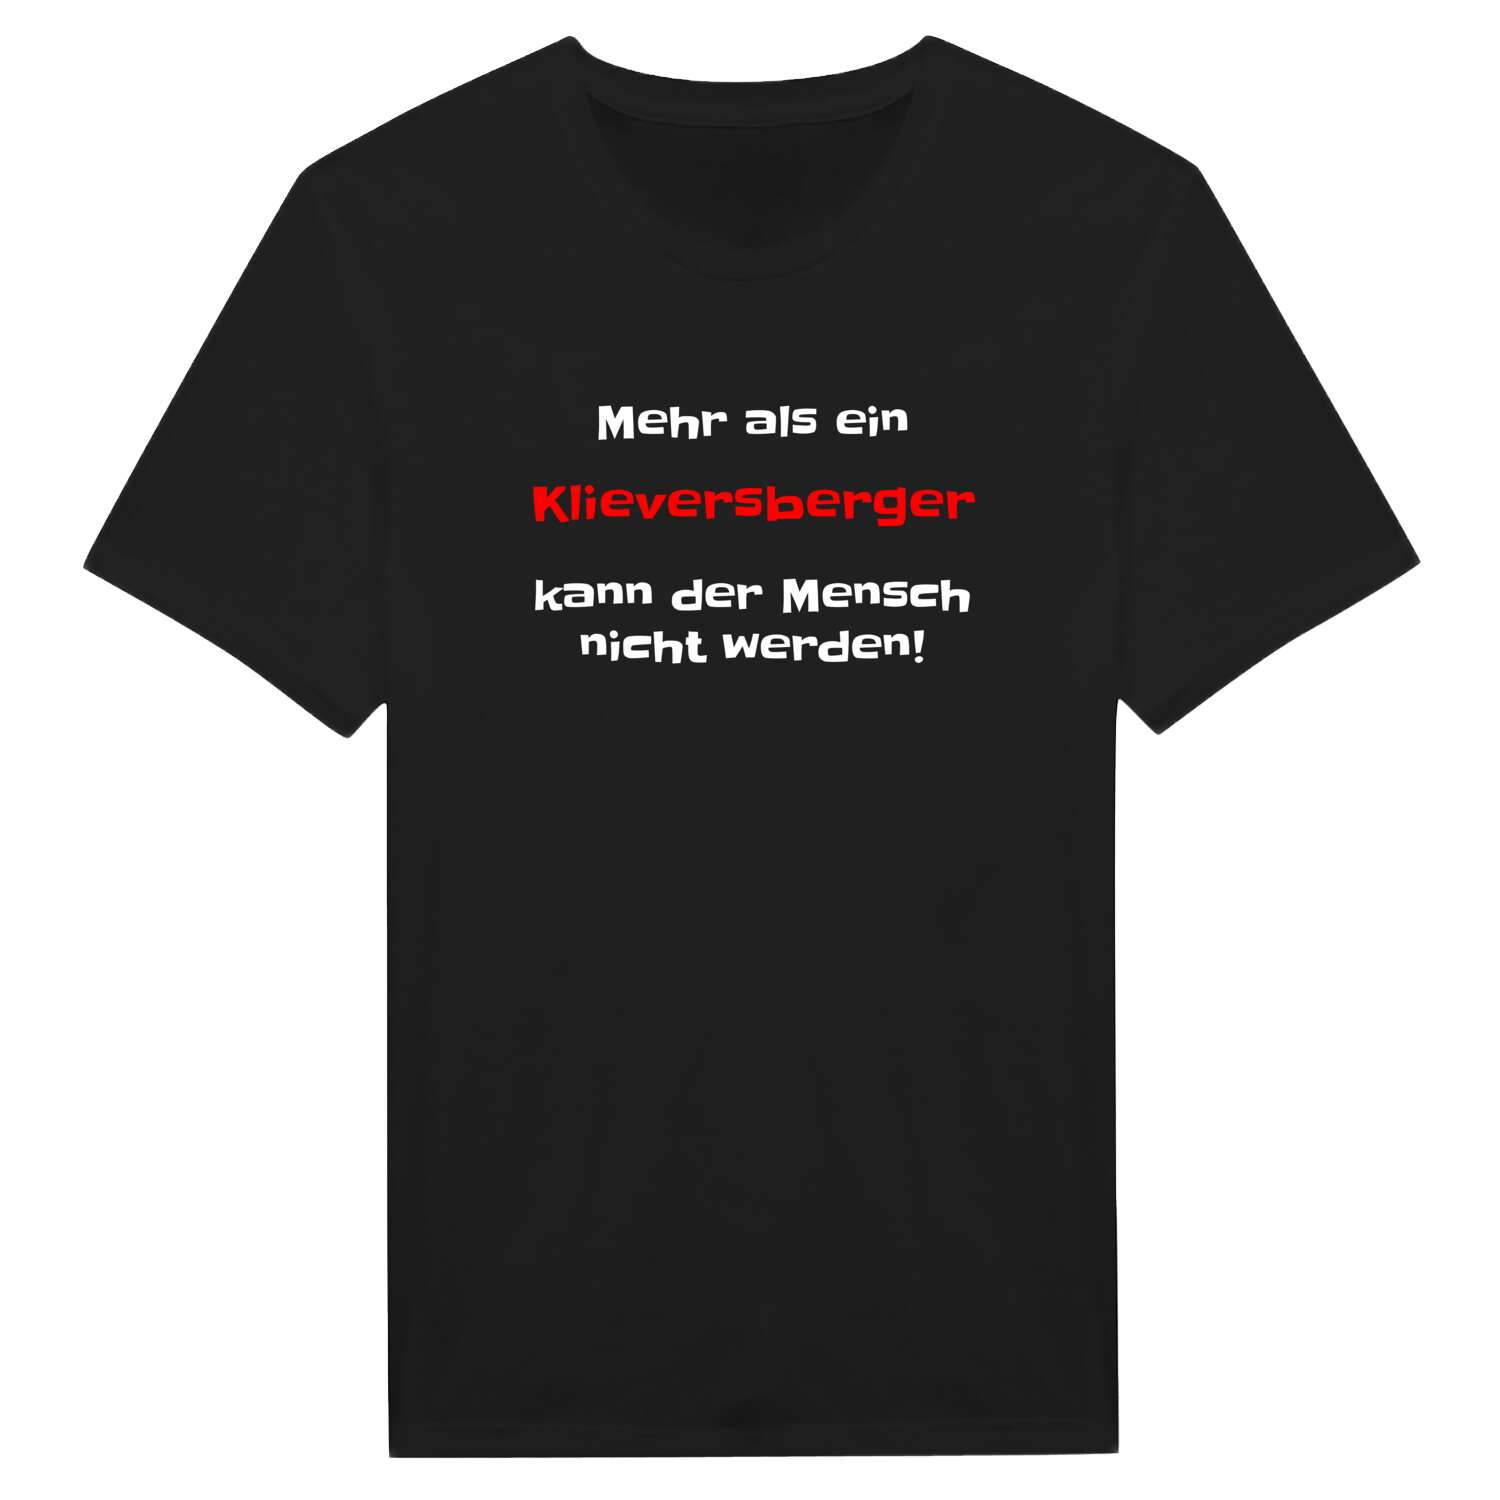 Klieversberg T-Shirt »Mehr als ein«